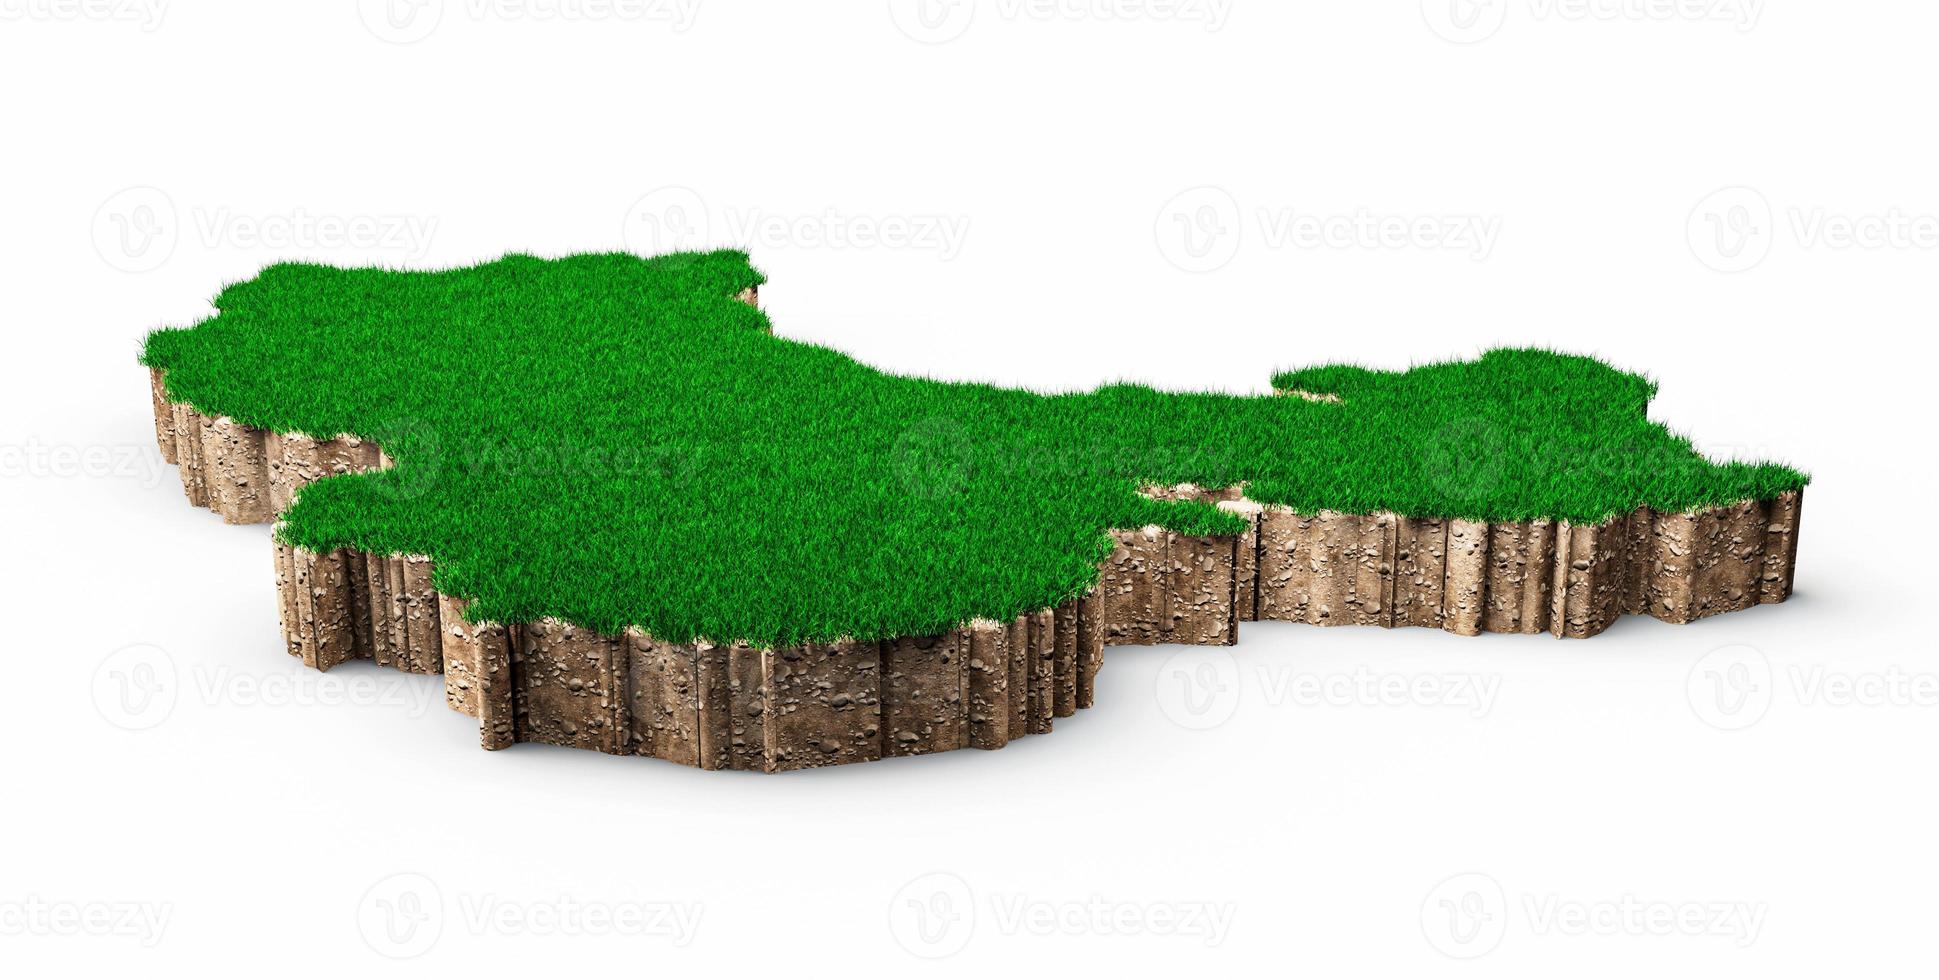 Kina karta jord mark geologi tvärsnitt med grönt gräs och sten marken textur 3d illustration foto